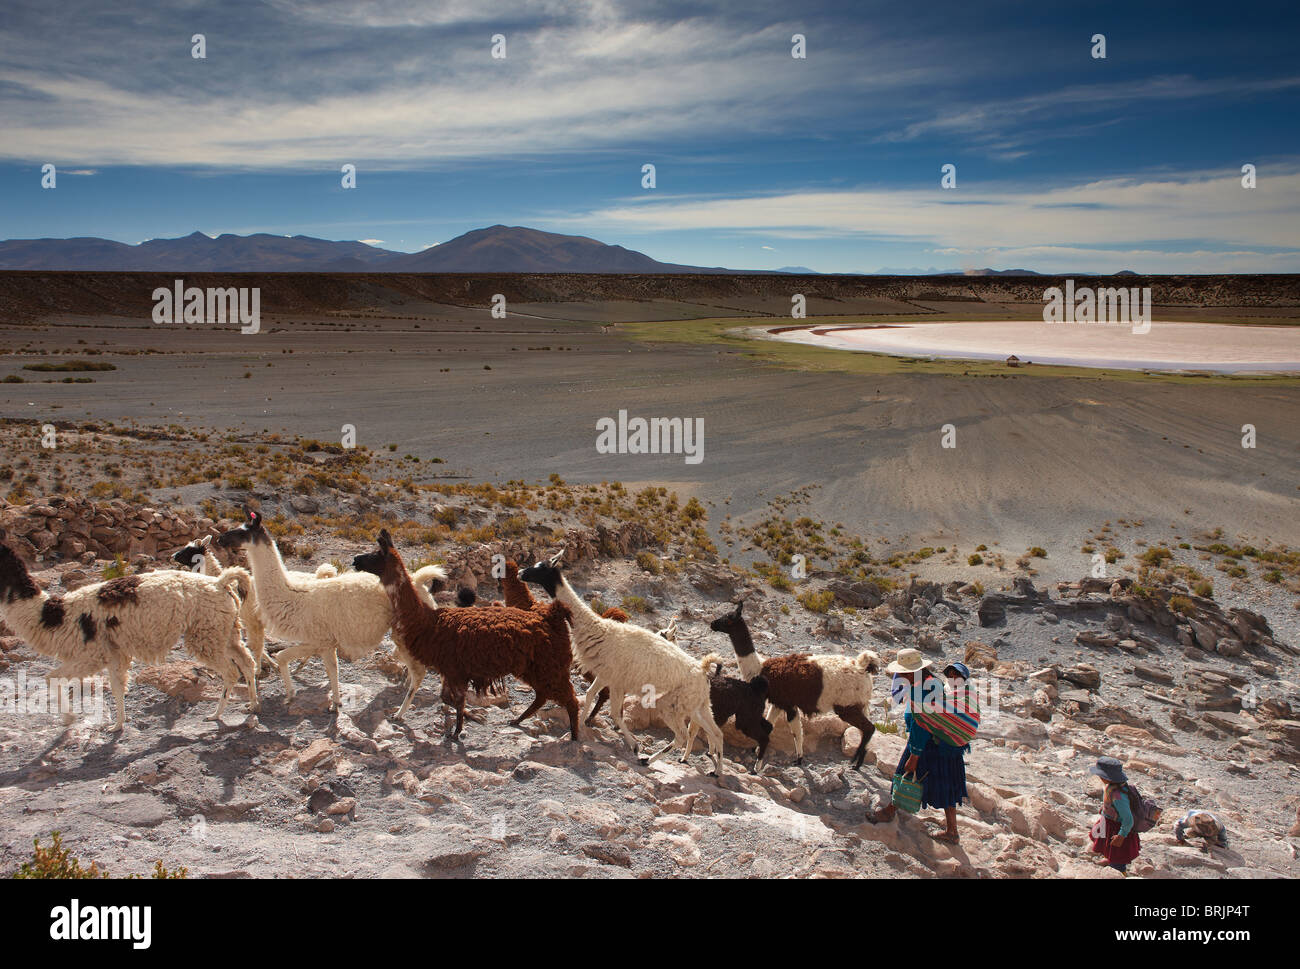 eine Frau mit ihrer Tochter mit einer Herde von Lamas in einem vulkanischen Krater auf dem Altiplano, Nr. Castiloma, Bolivien Stockfoto